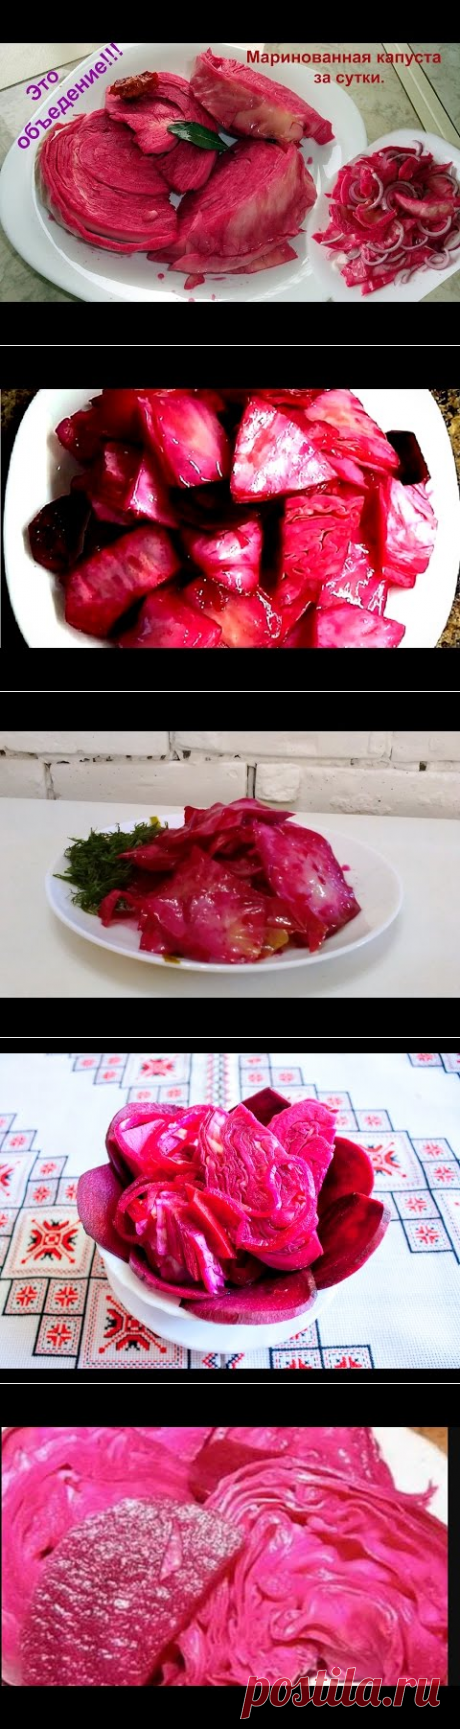 (1447) Маринованная капуста кусочками со свеклой.Простой и вкусный видеорецепт - YouTube